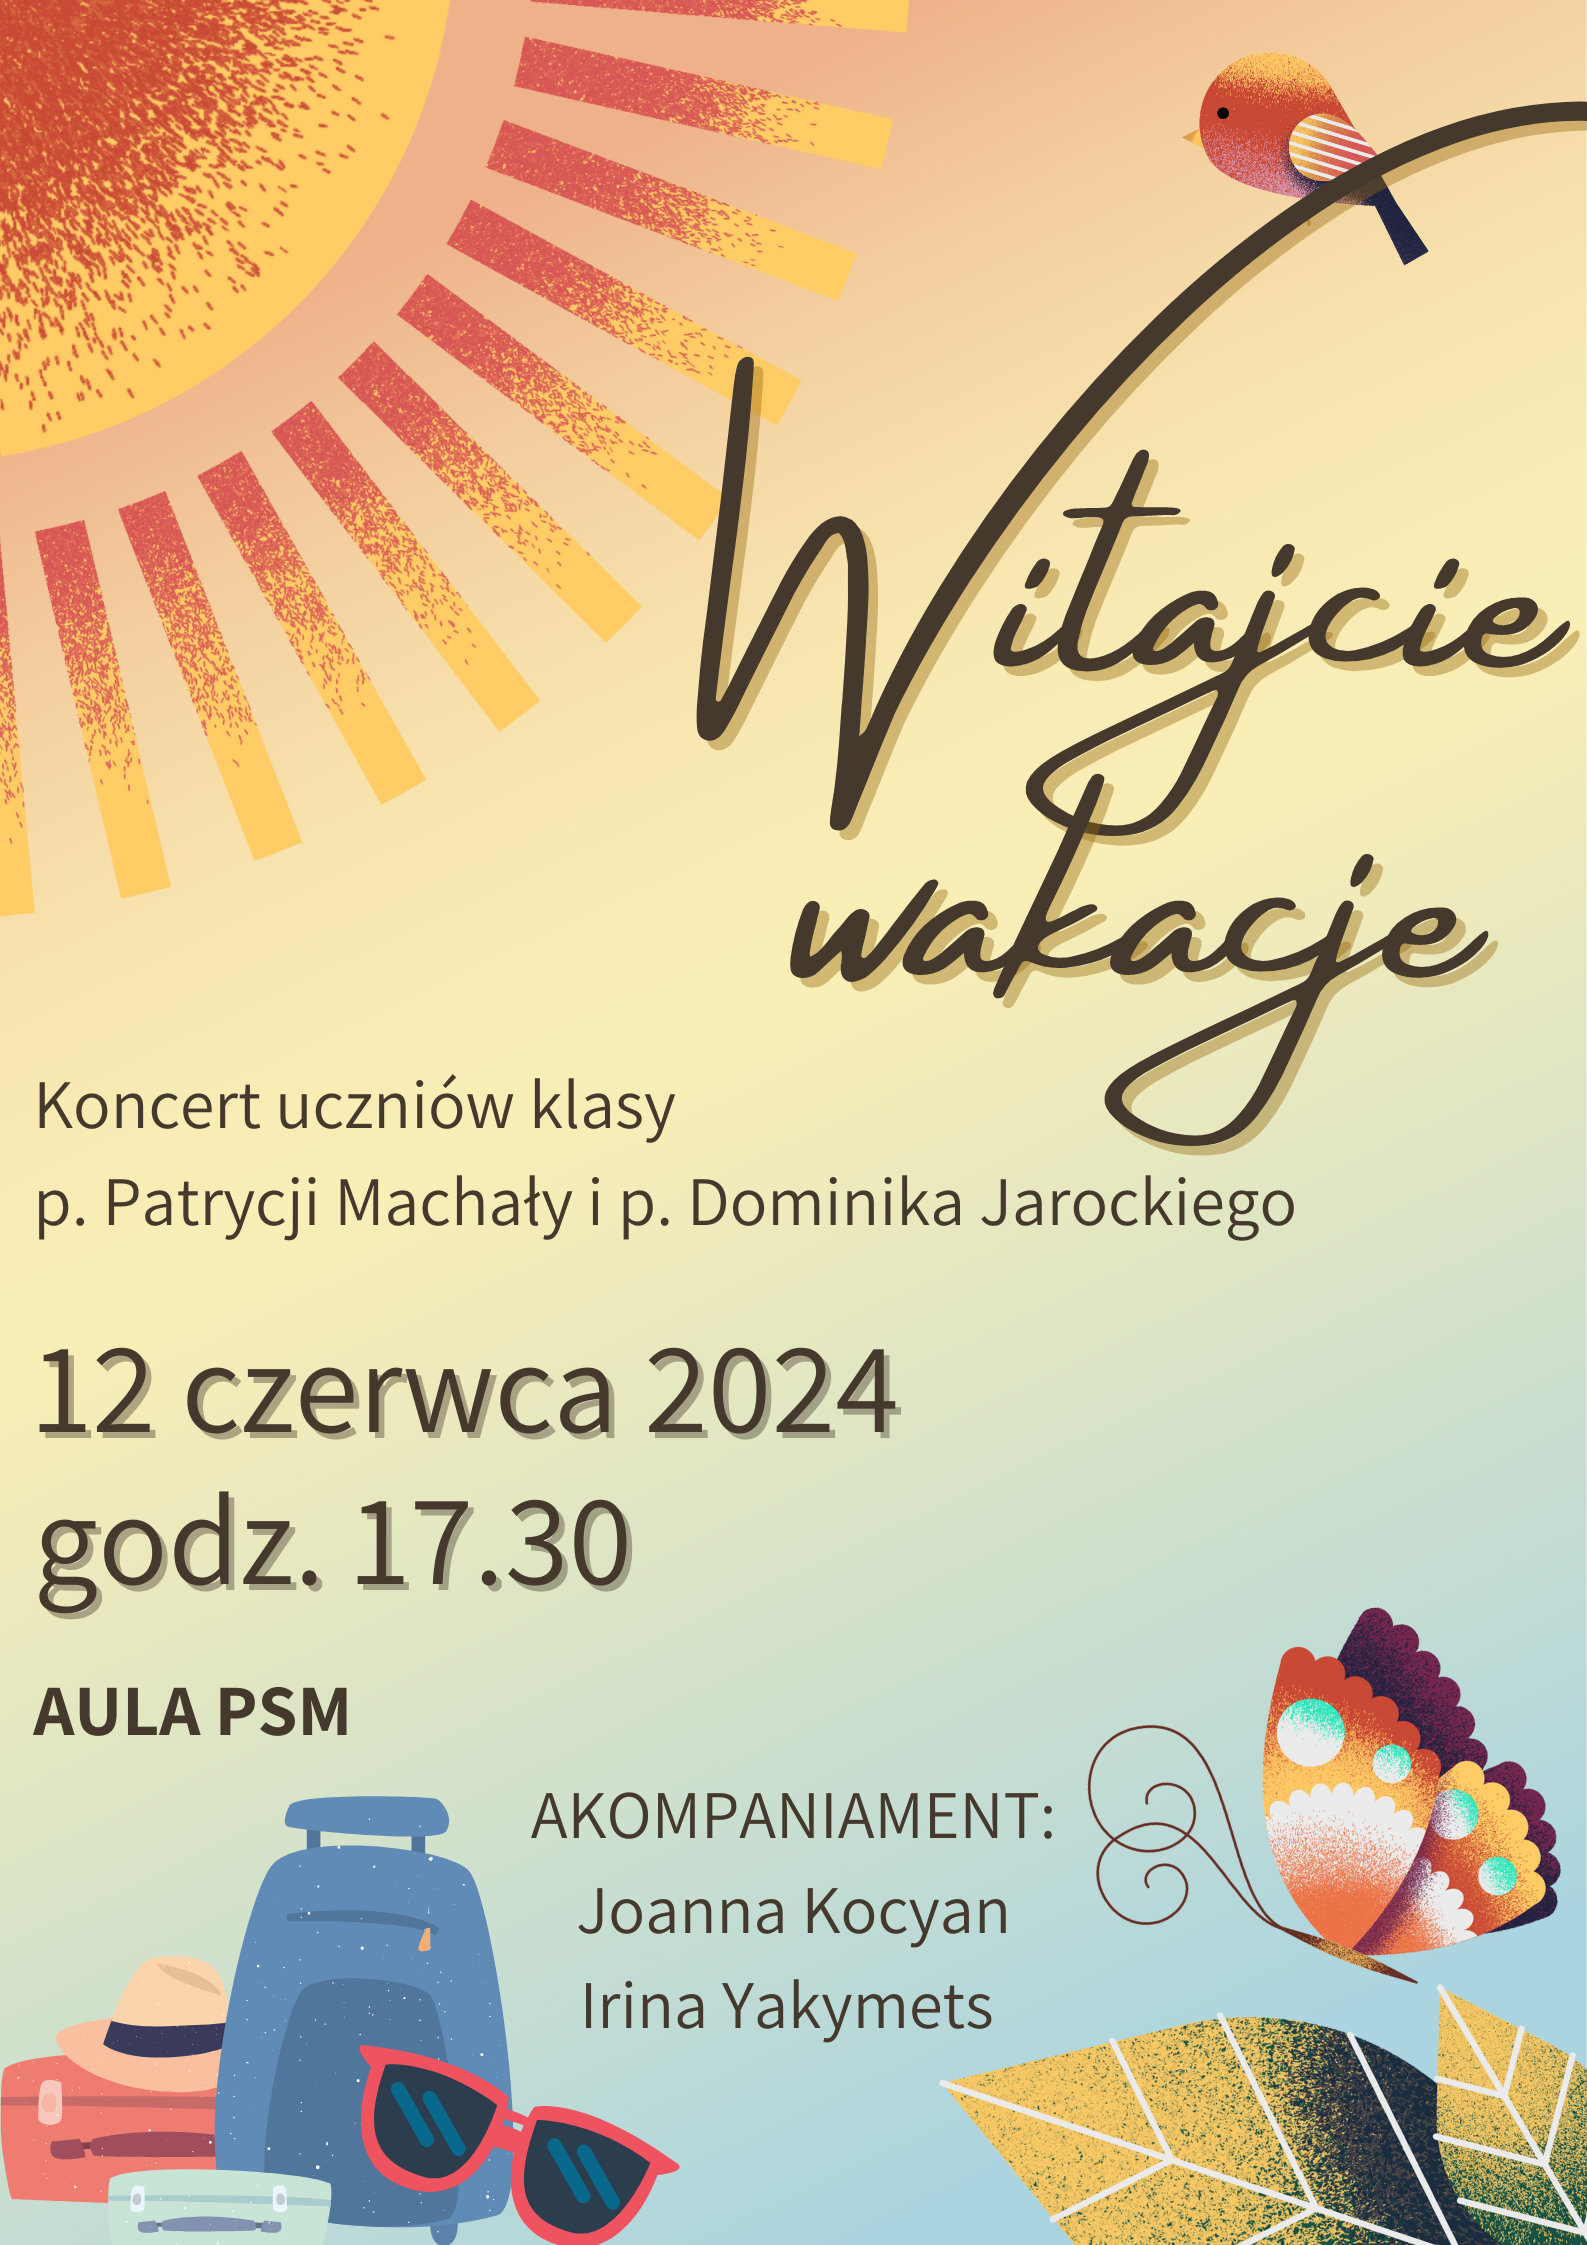 Plakat na kolorowym tle z informacją dot. koncert uczniów klasy p. Patrycji Machały i p. Dominika Jarockiego , który odbędzie się 12 czerwca 2024 w auli PSM w Kłodzku